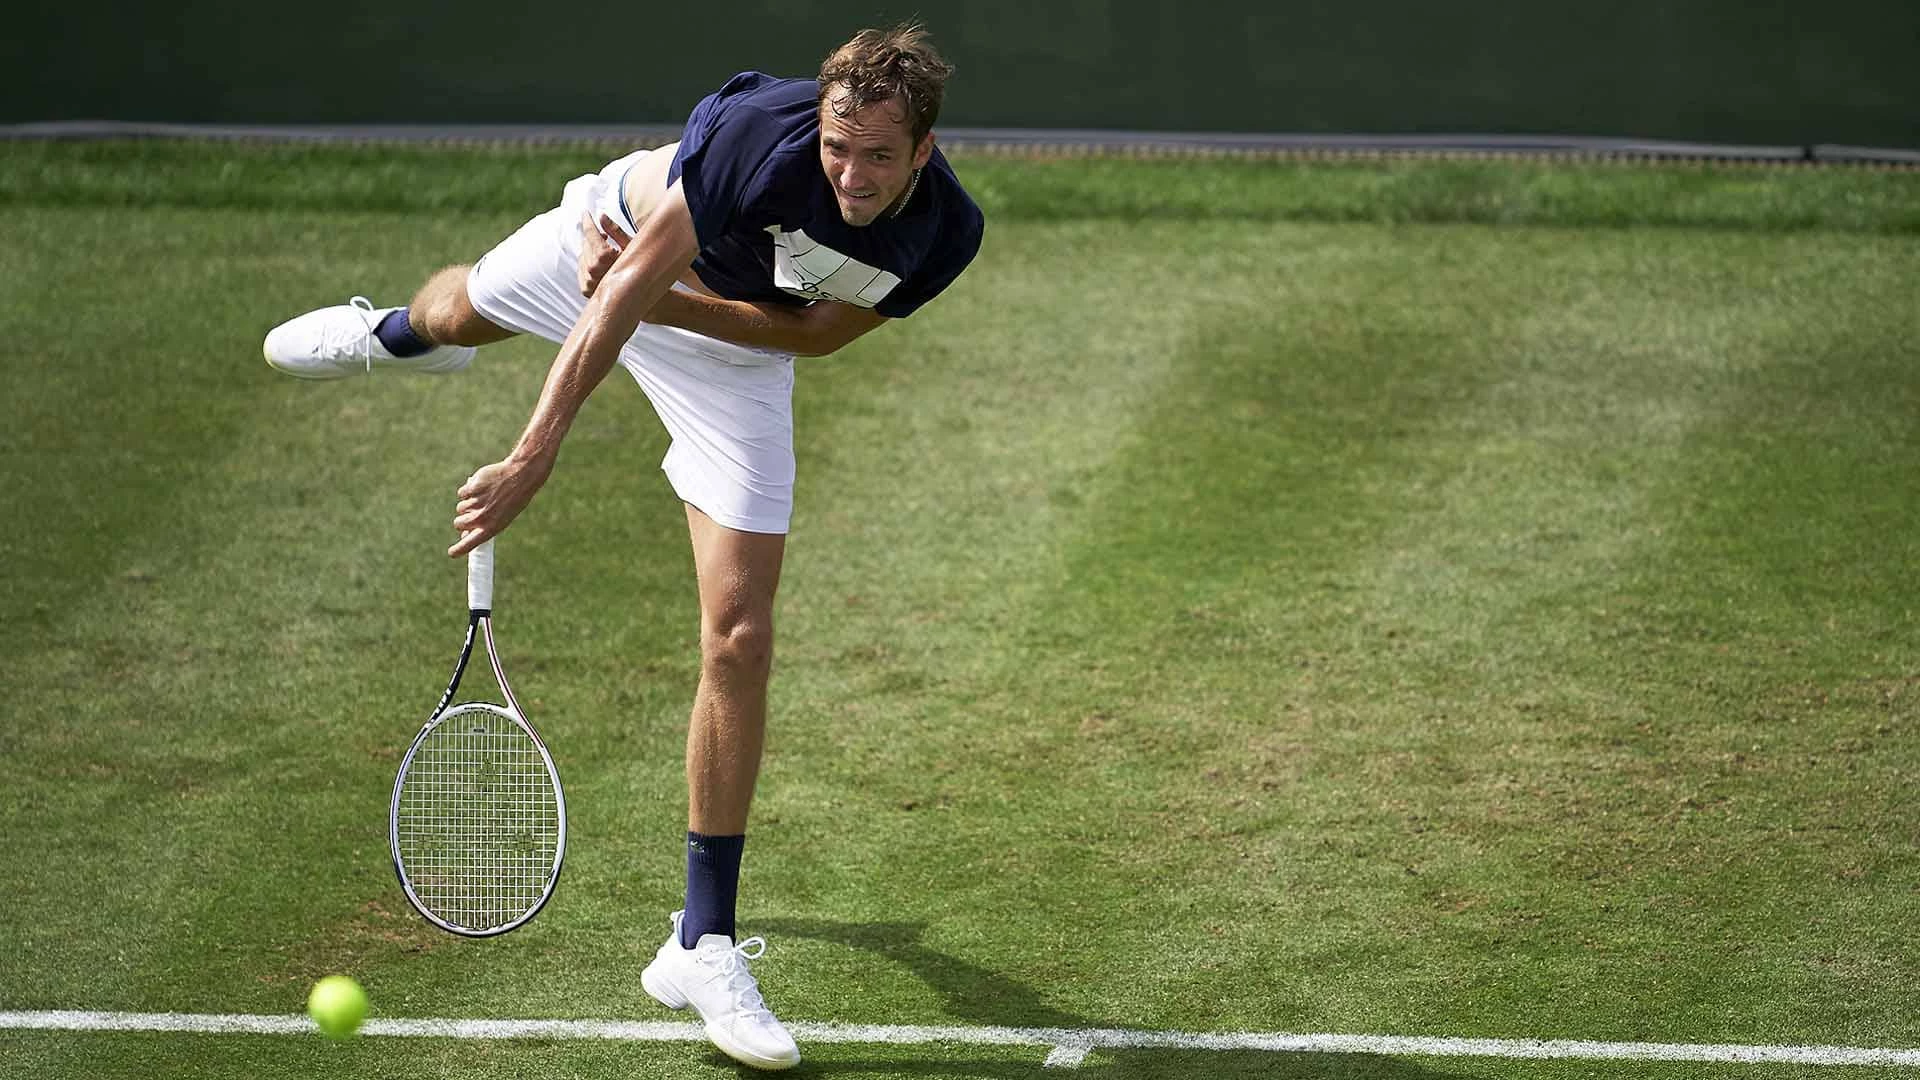 Даниил Медведев - Пабло Каррено-Буста. Прогноз на матч ATP Мальорка (25 июня 2021 года)